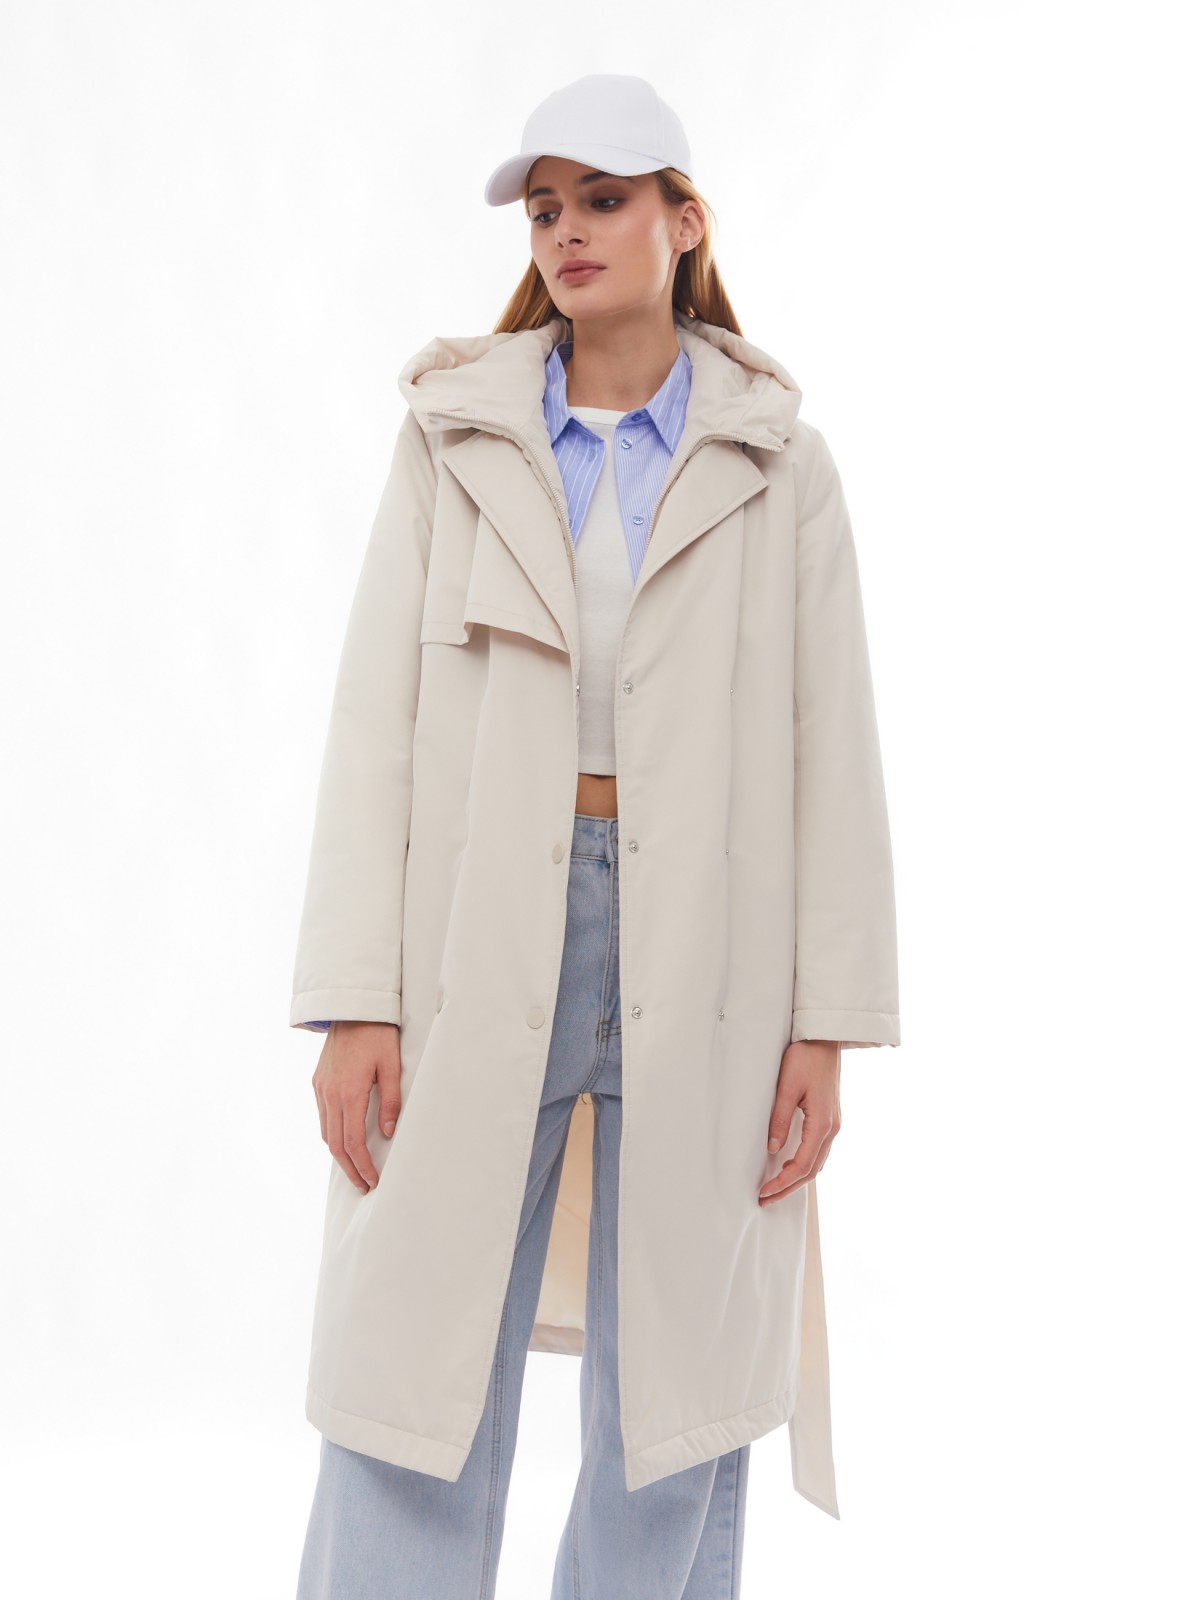 Утеплённое пальто на синтепоне с капюшоном и вшитой манишкой zolla 02412520L124, цвет молоко, размер XS